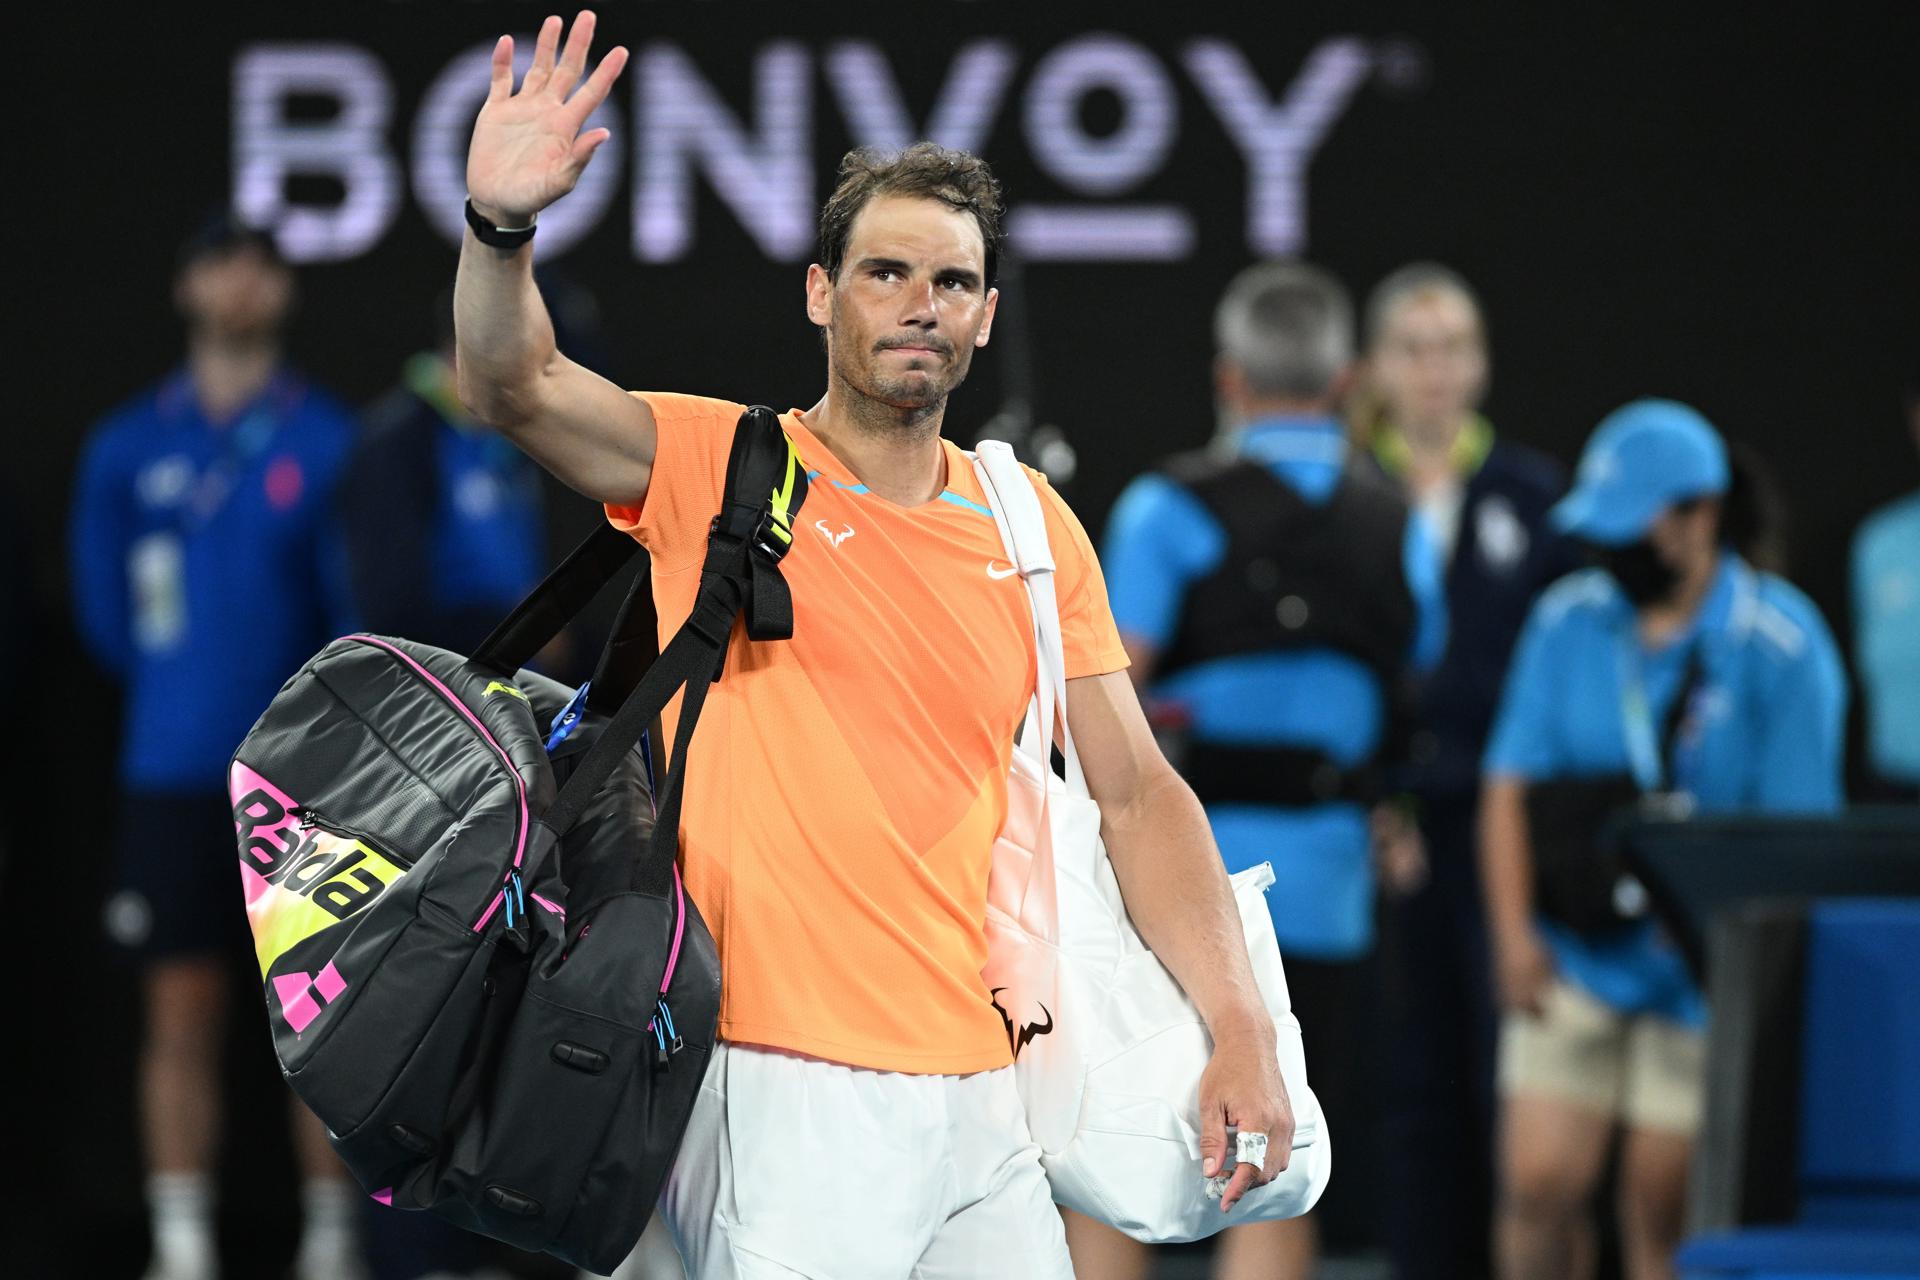 Rafael Nadal no jugará en Roland Garros: “No tengo intención de seguir jugando por los siguientes meses” (Detalles)